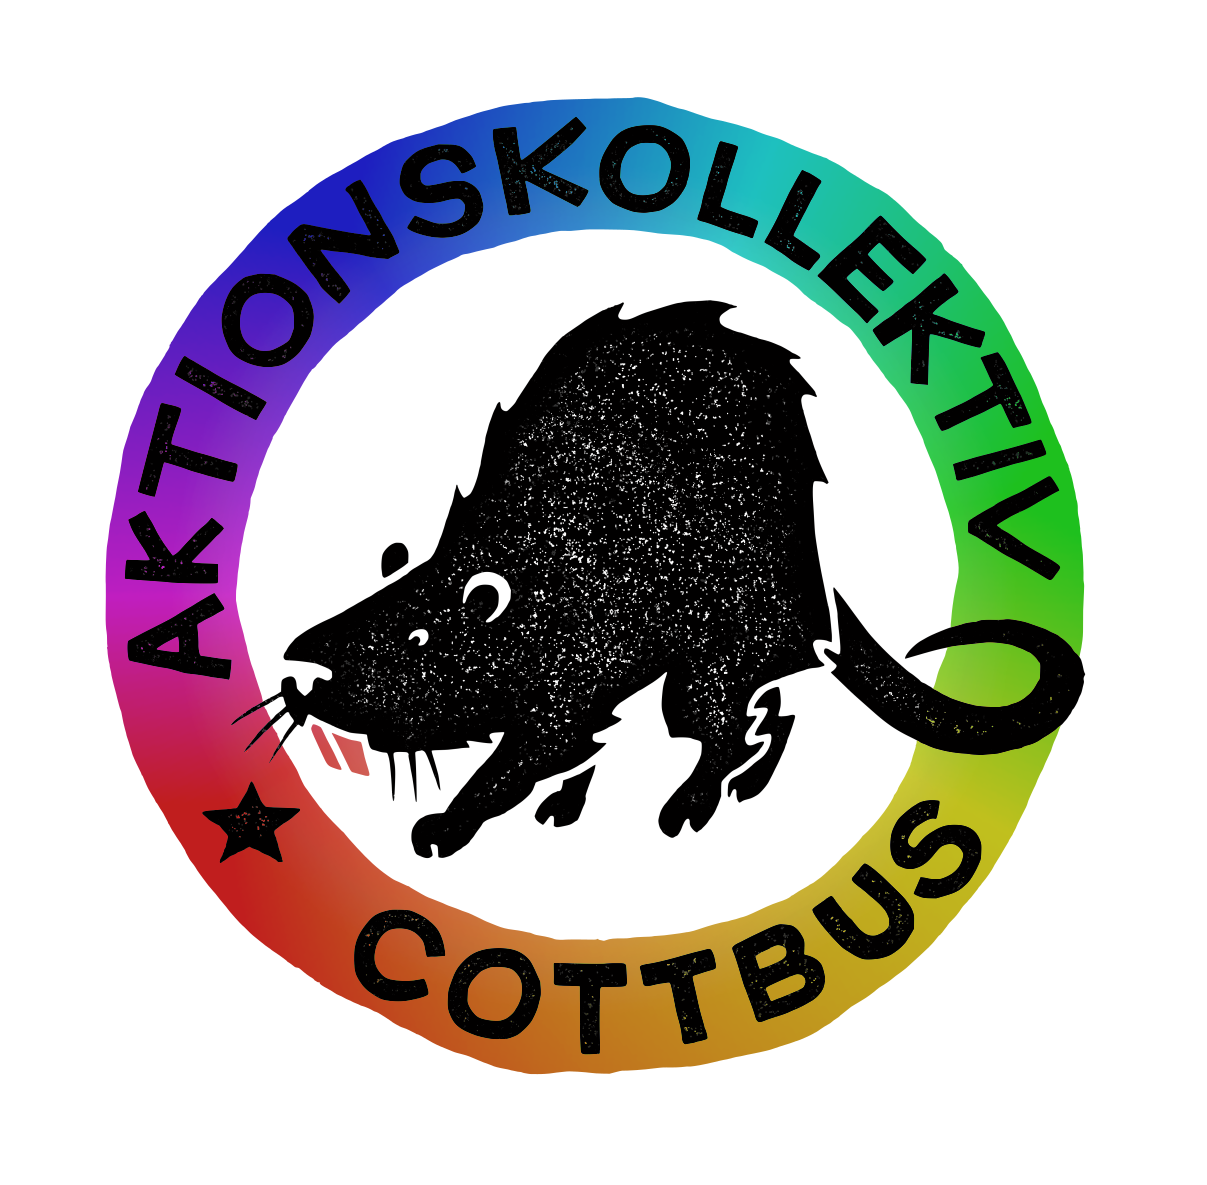 Aktionskollektiv Cottbus